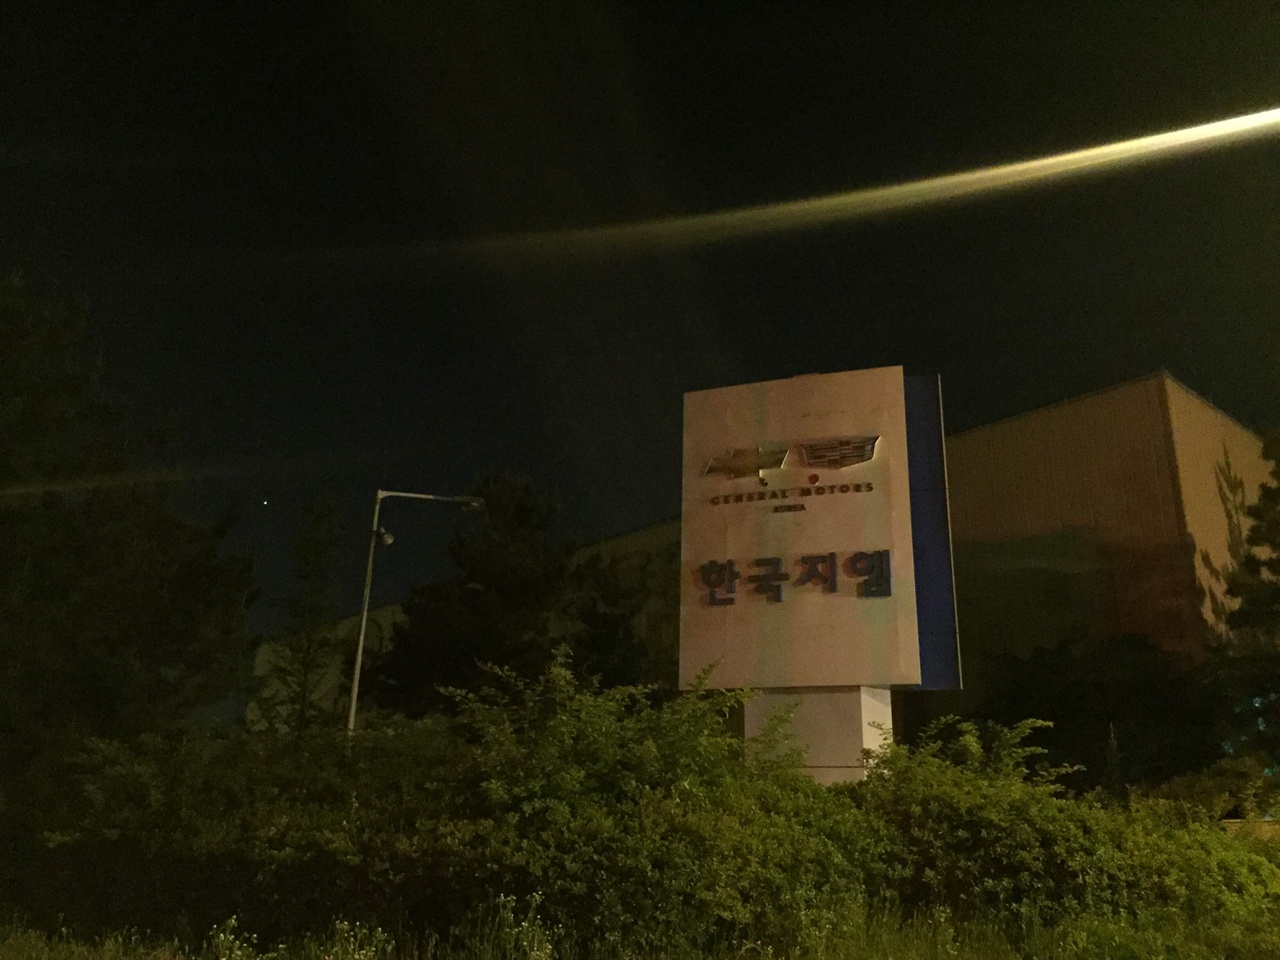 2018년 5월 31일의 한국GM 군산공장 정문 퇴근하며 차를 몰아, 공장에 들러봅니다. 아, 오늘로 문을 닫은 한국GM 군산공장입니다. 